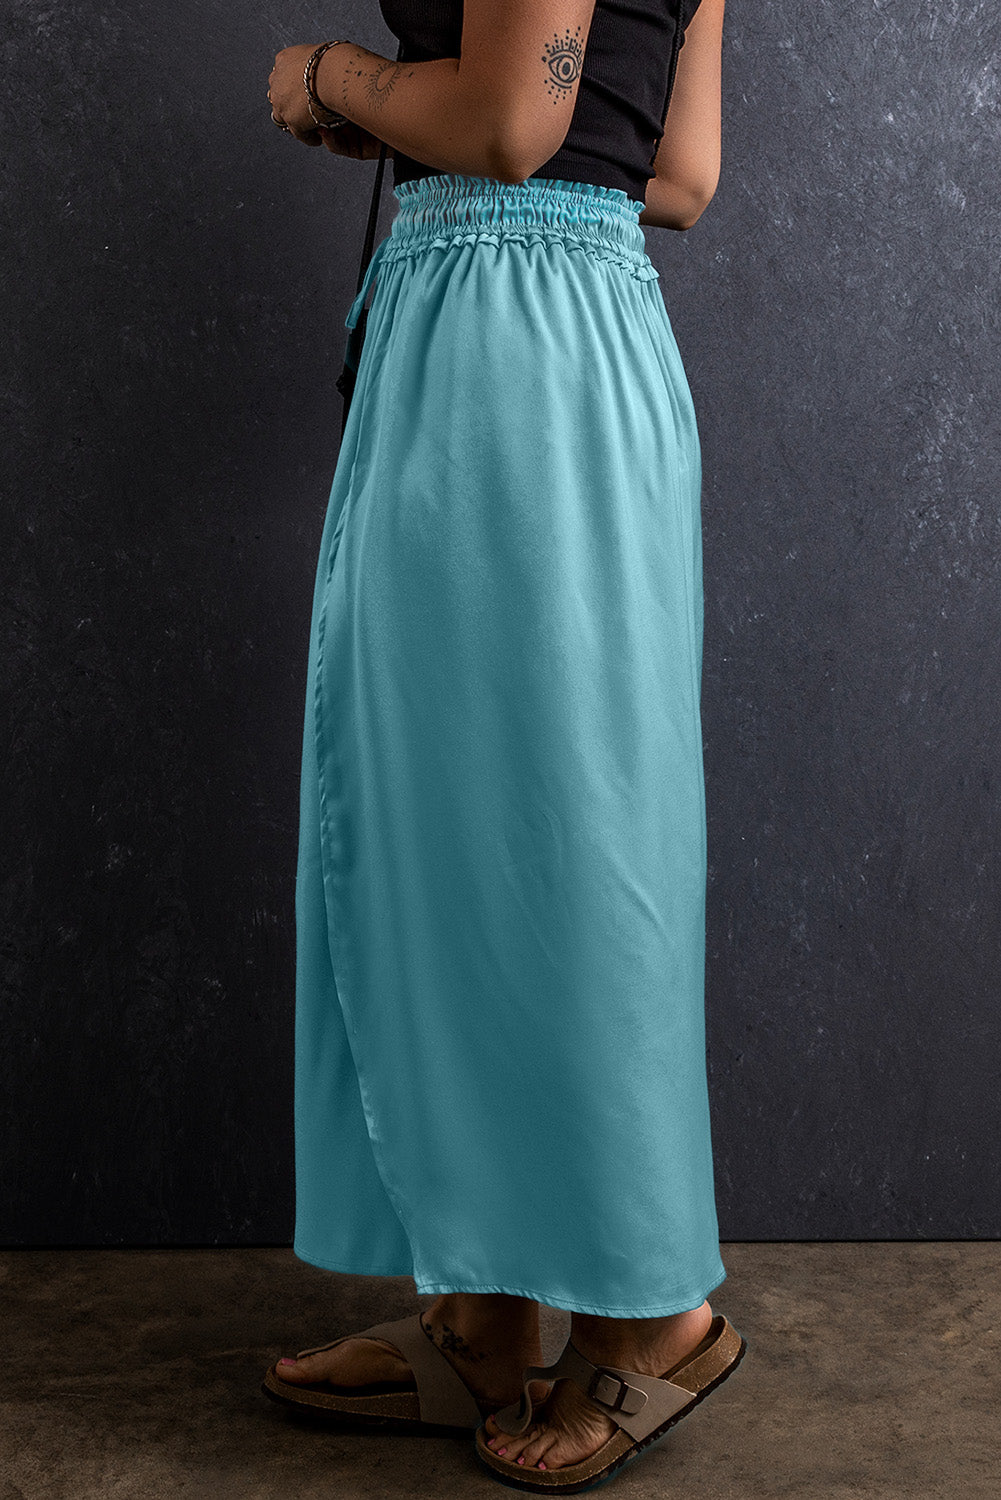 Peacock Blue Drawstring Elastic Waist Side Split Flowy Skirt